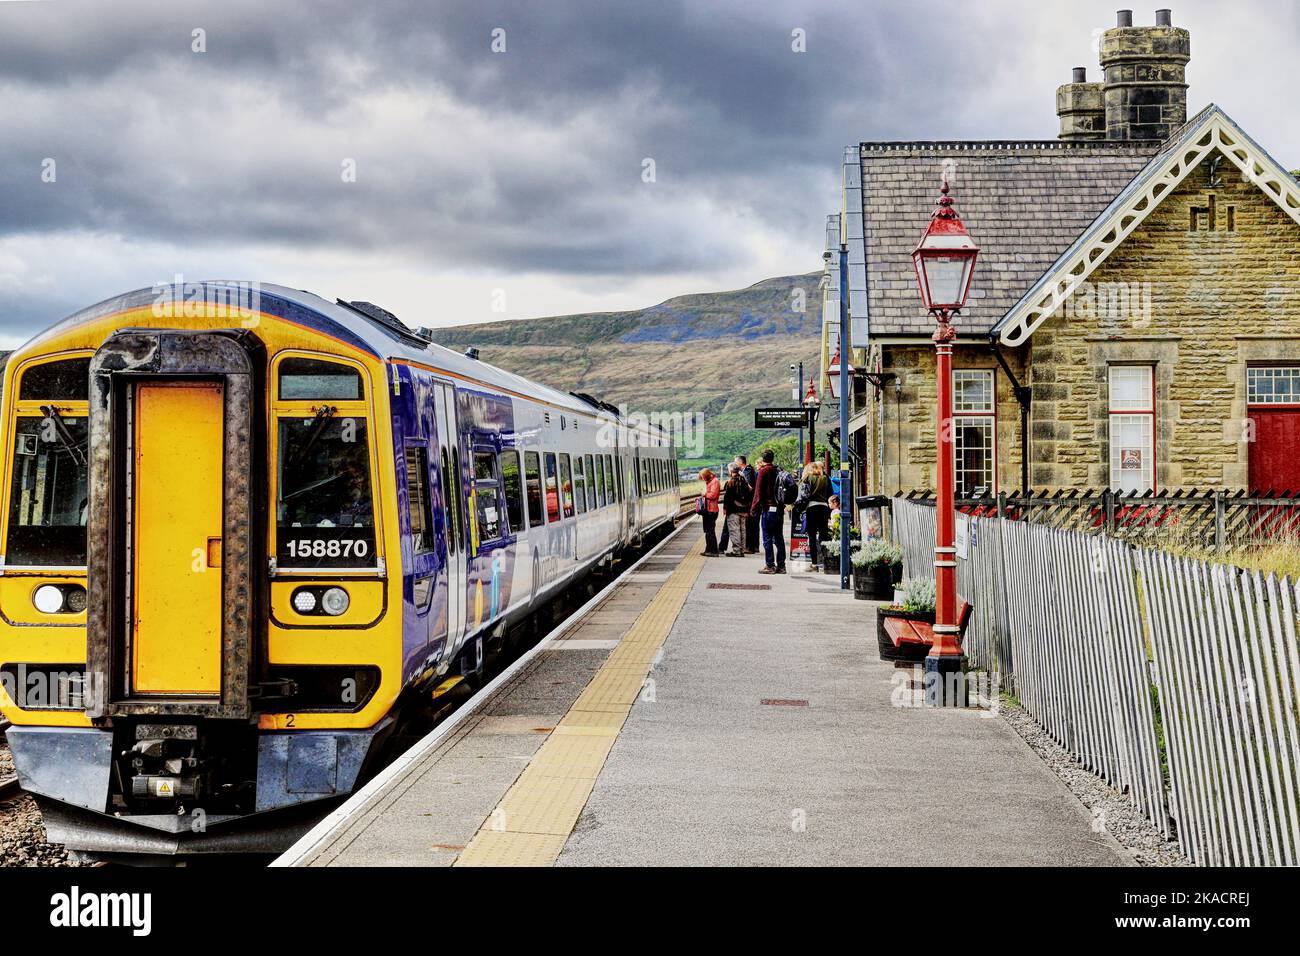 Les passagers font la queue pour monter à bord d'un train à la gare de Ribblehead, sur le plateau de Carlisle Line, Ribble Valley, North Yorkshire, Angleterre, Royaume-Uni Banque D'Images